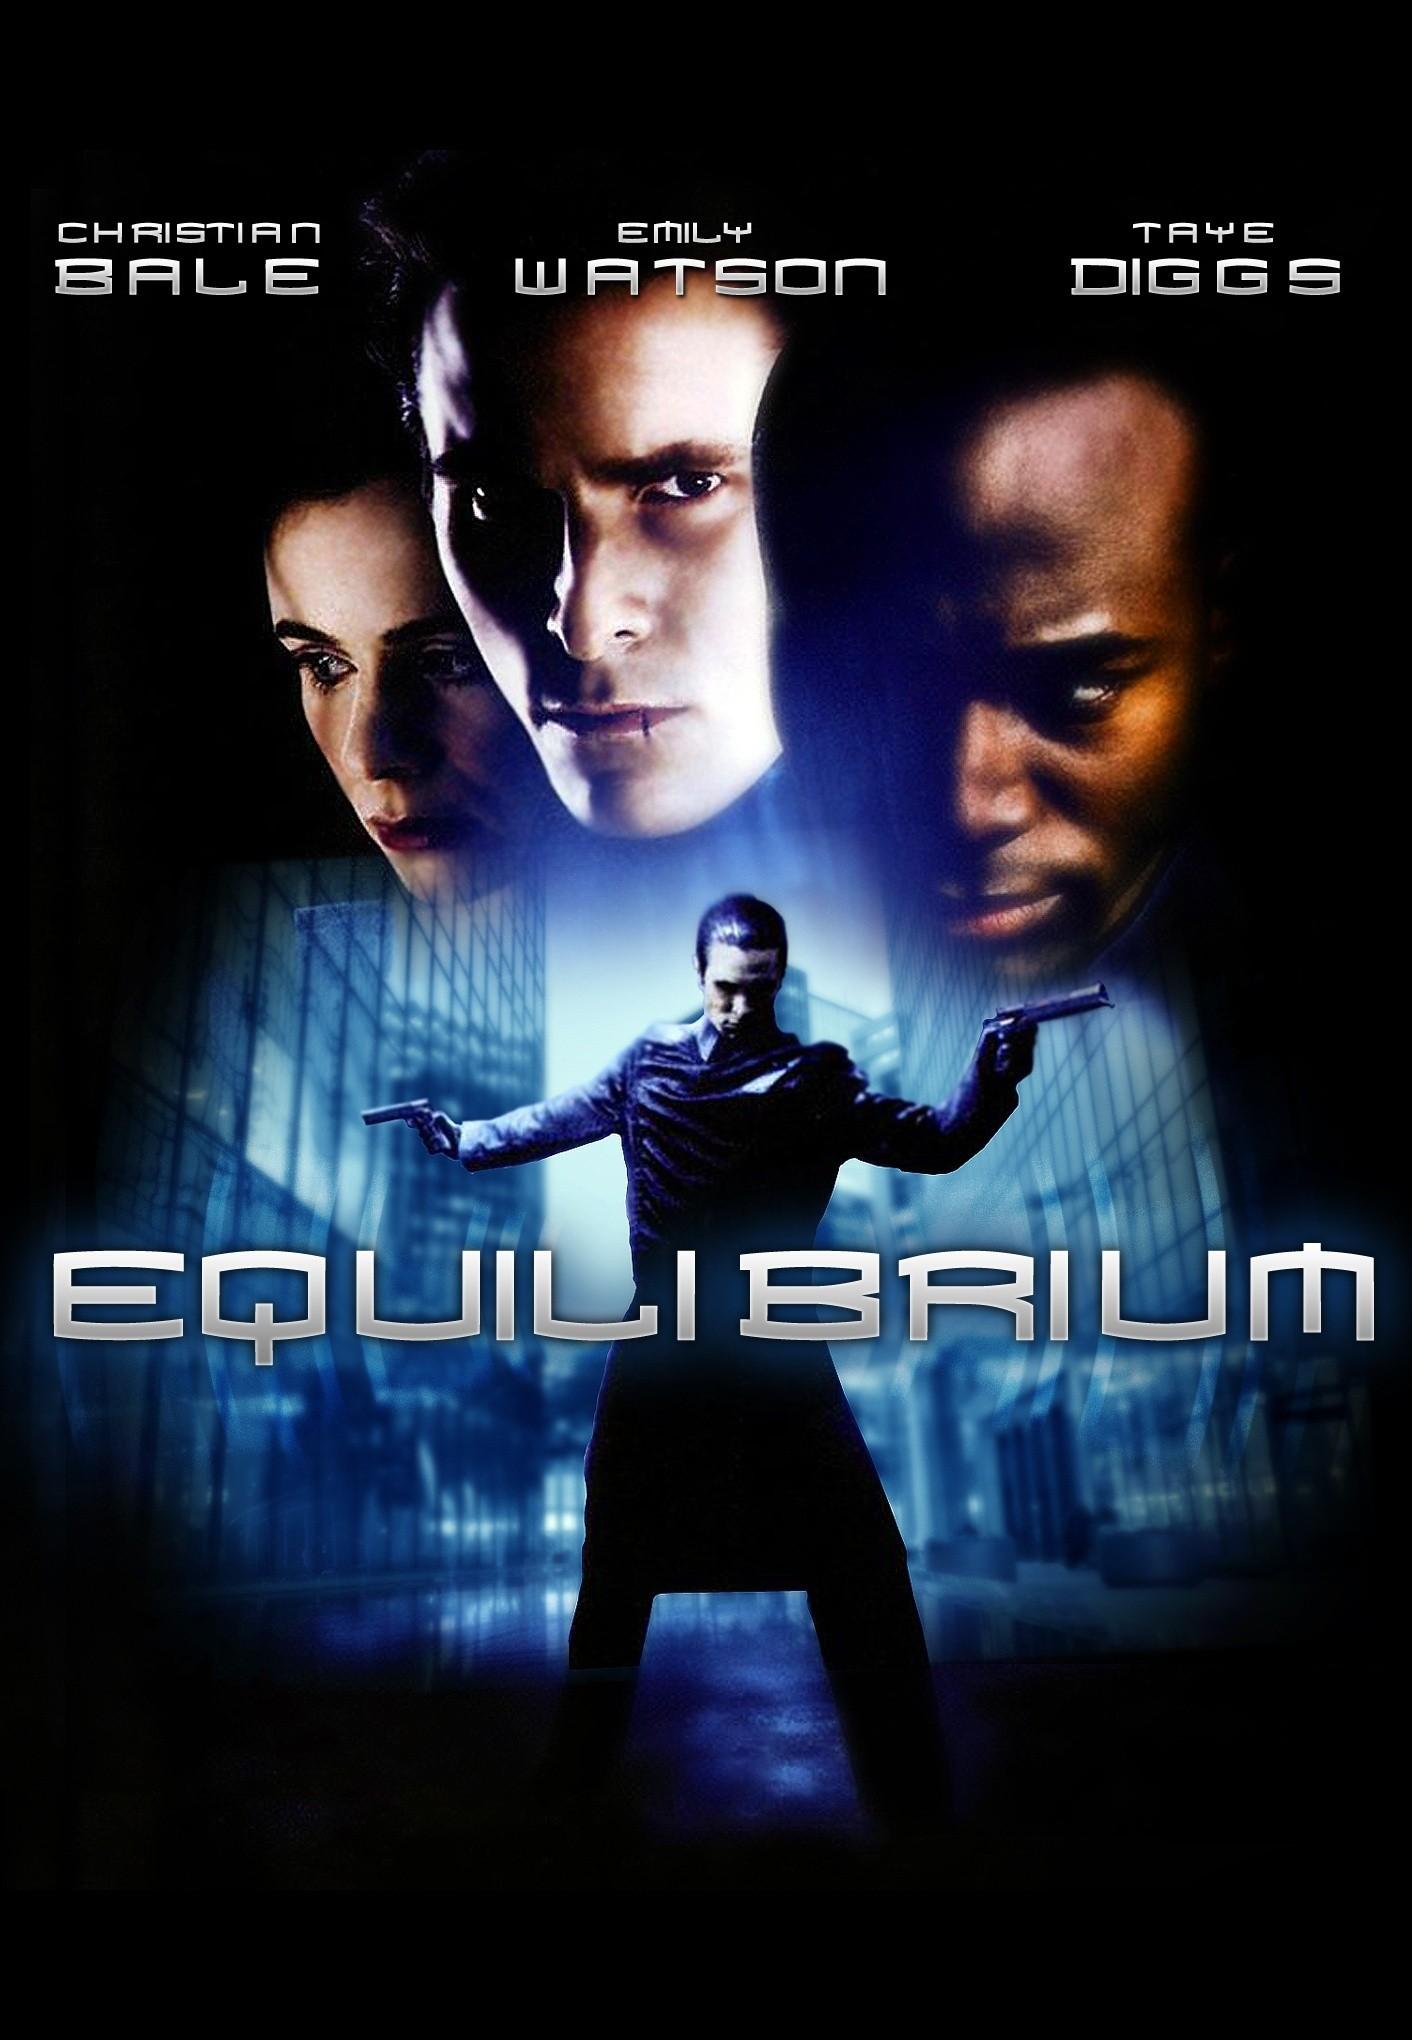 equilibrium (2002)dvdplanetstorepk